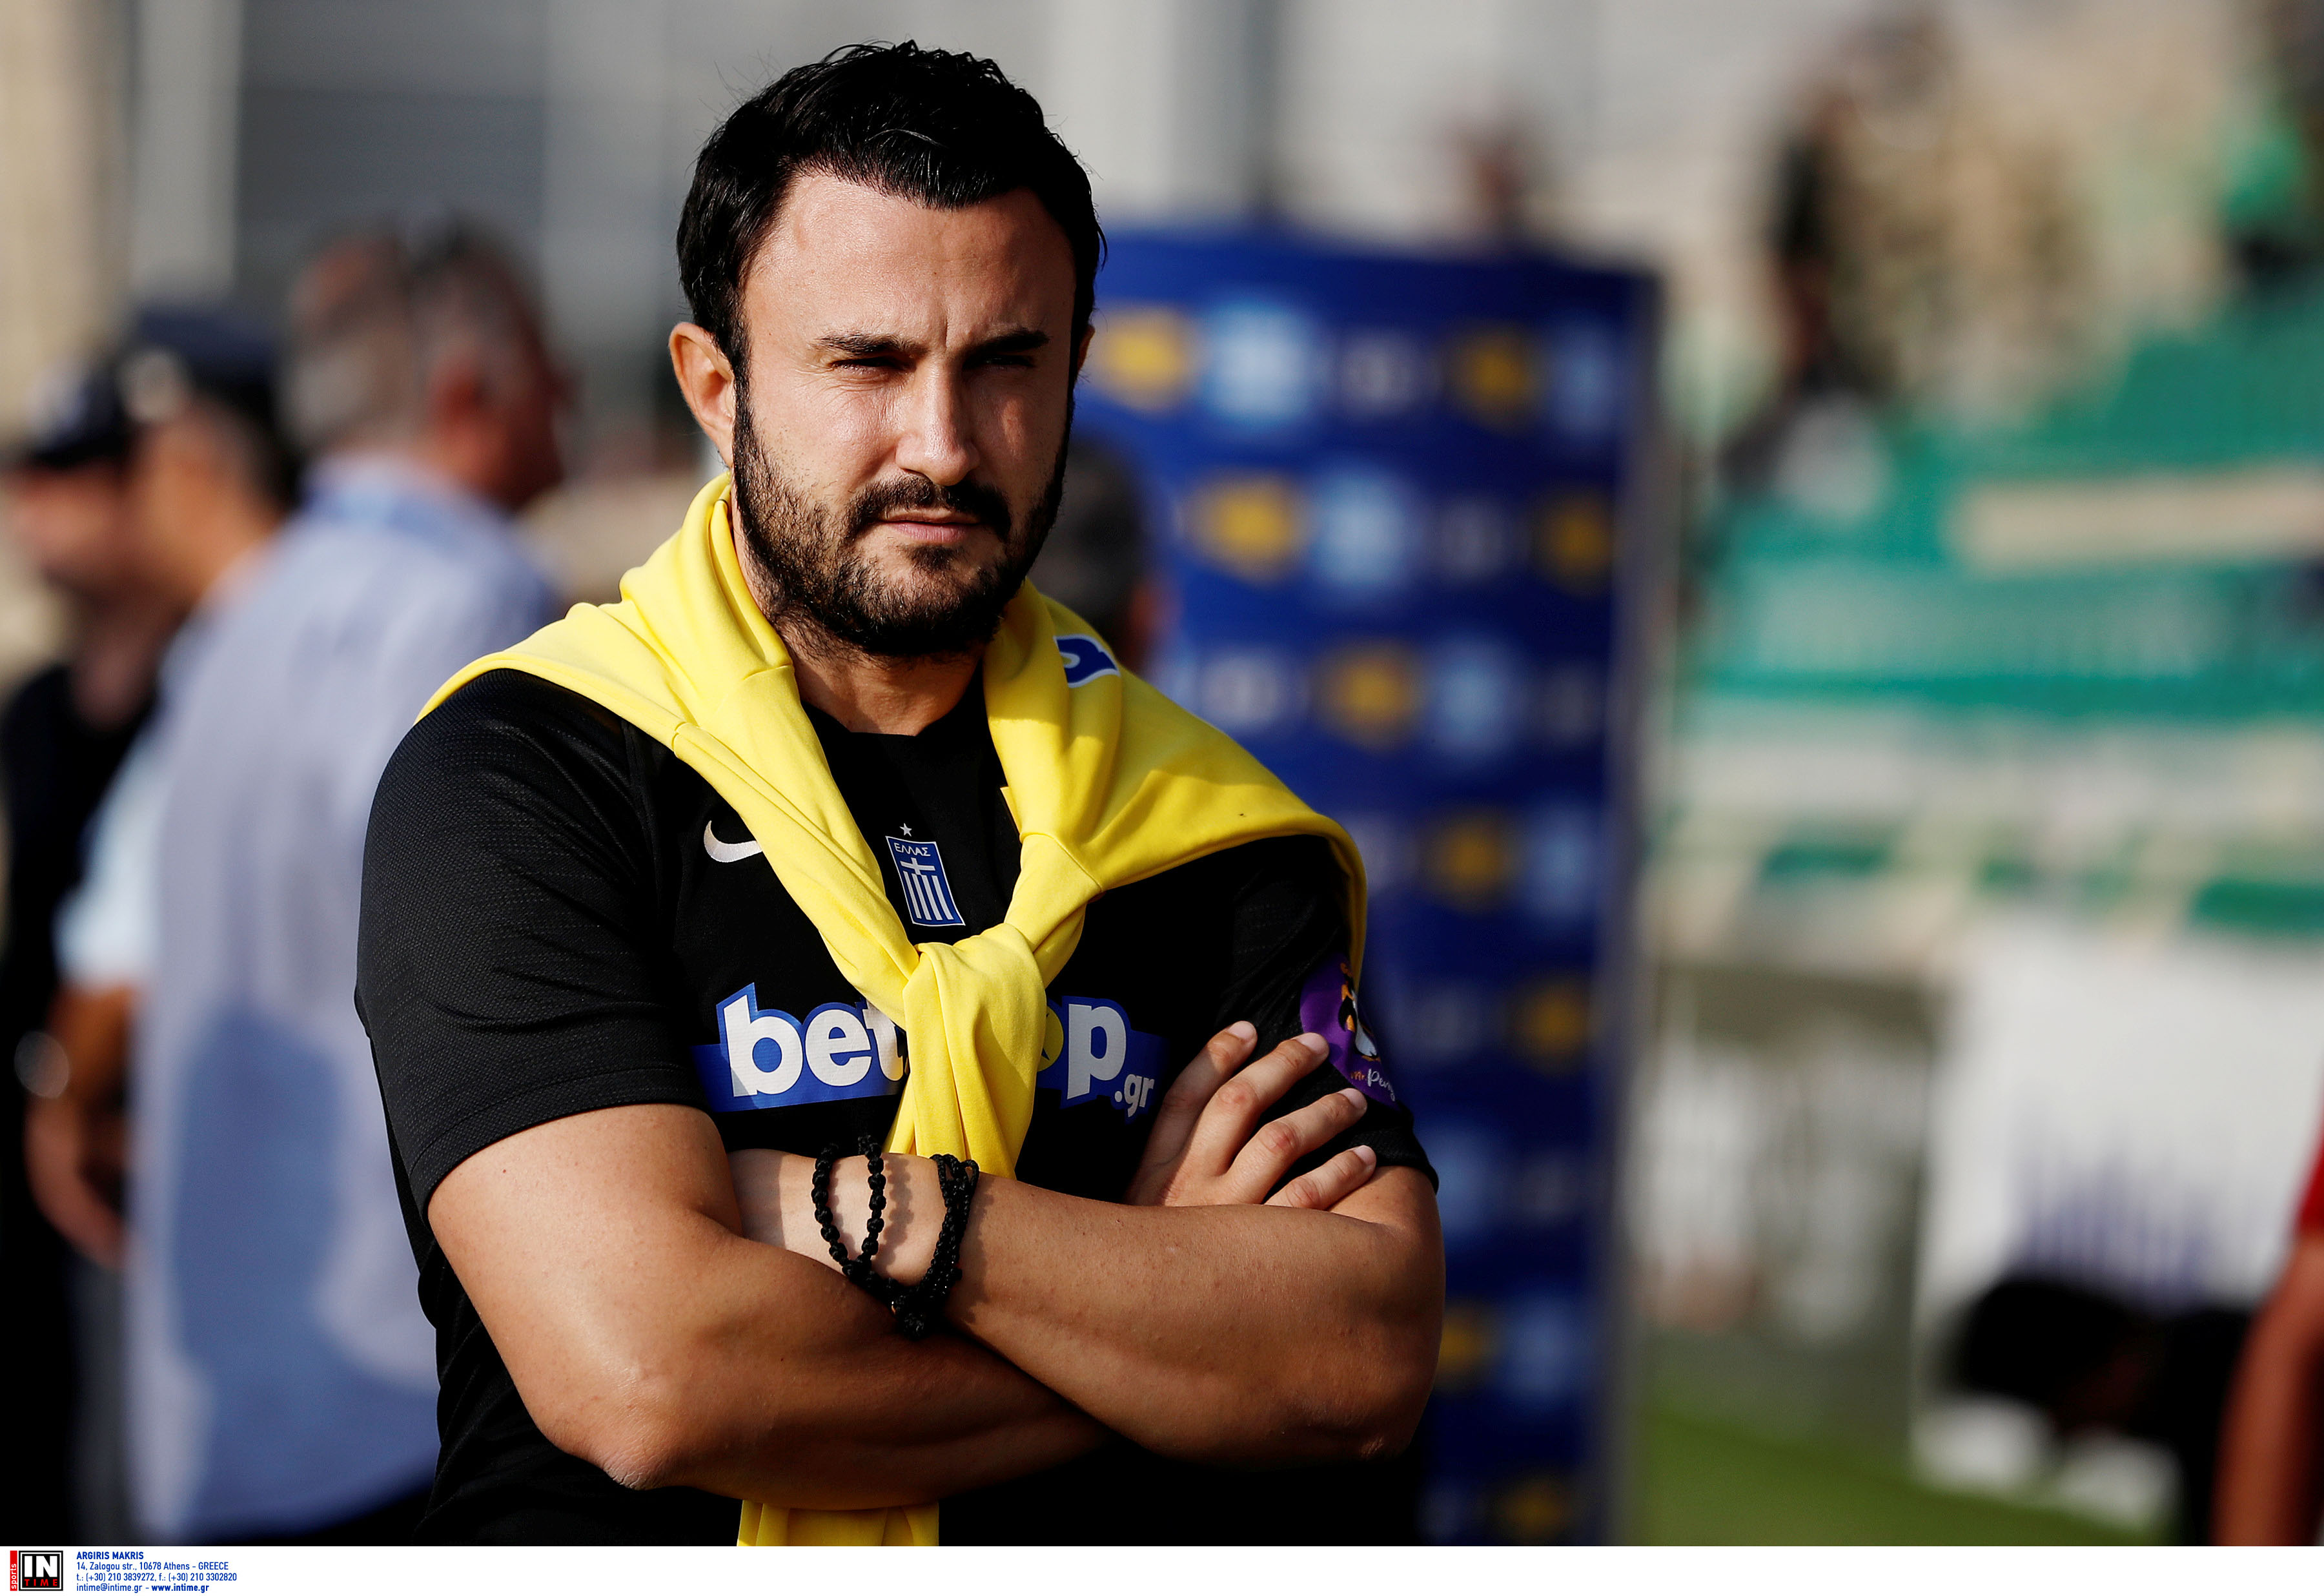 Άρης: «Θέλω να φέρω έναν τίτλο στο σύλλογο» δήλωσε ο Καρυπίδης